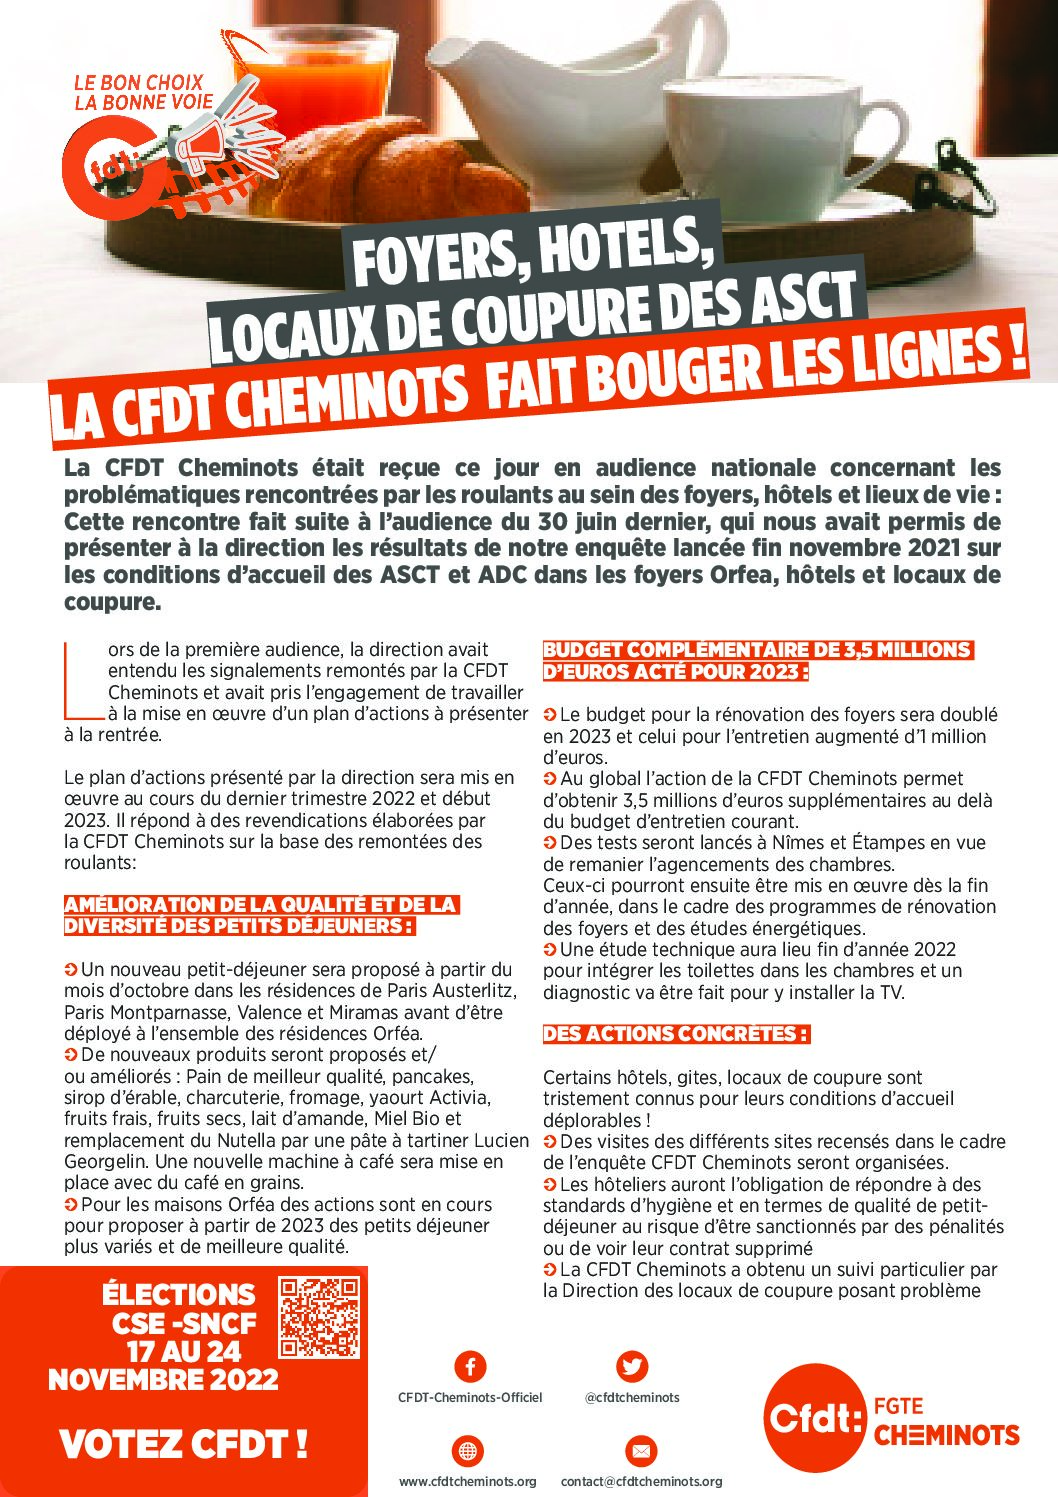 FOYERS, HOTELS, LOCAUX DE COUPURE DES ASCT LA CFDT CHEMINOTS FAIT BOUGER LES LIGNES !